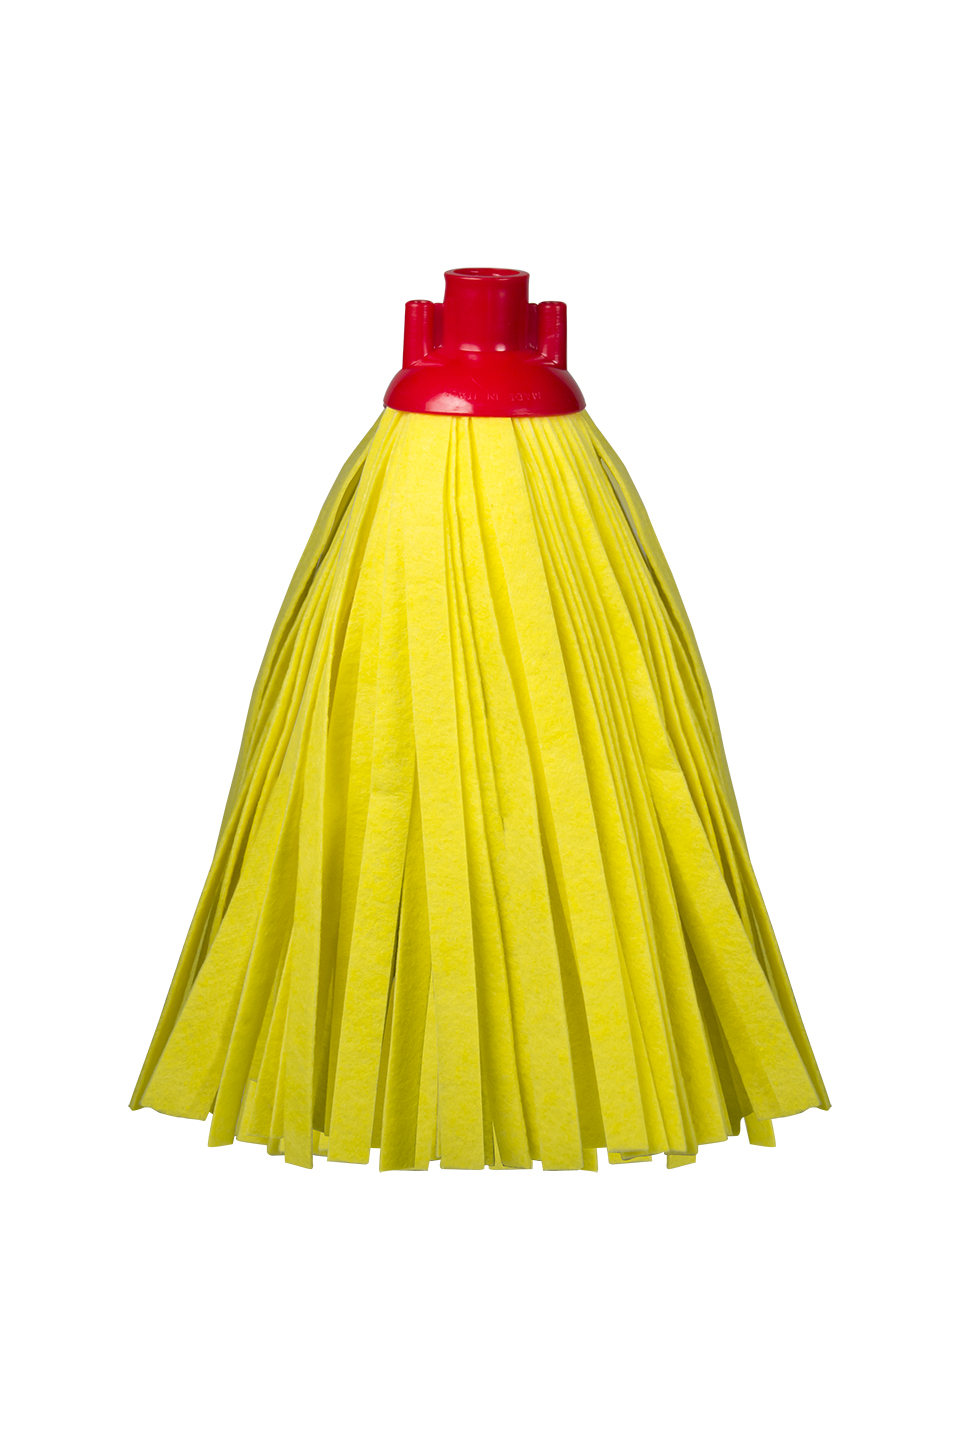 Mop sintetico 40 strisce 21 cm. tessuto giallo